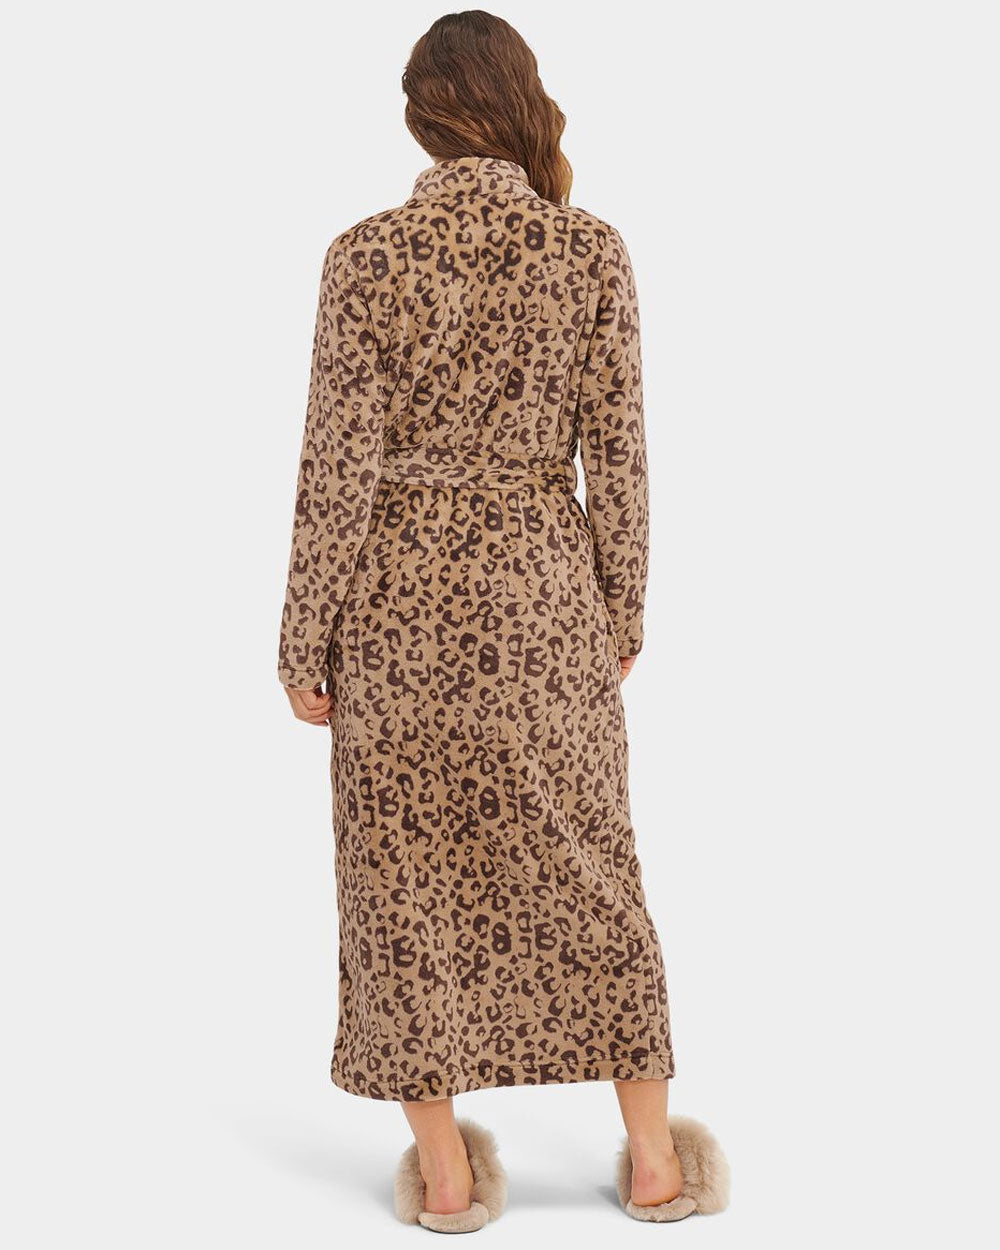 Marlow Robe in Live Oak Leopard